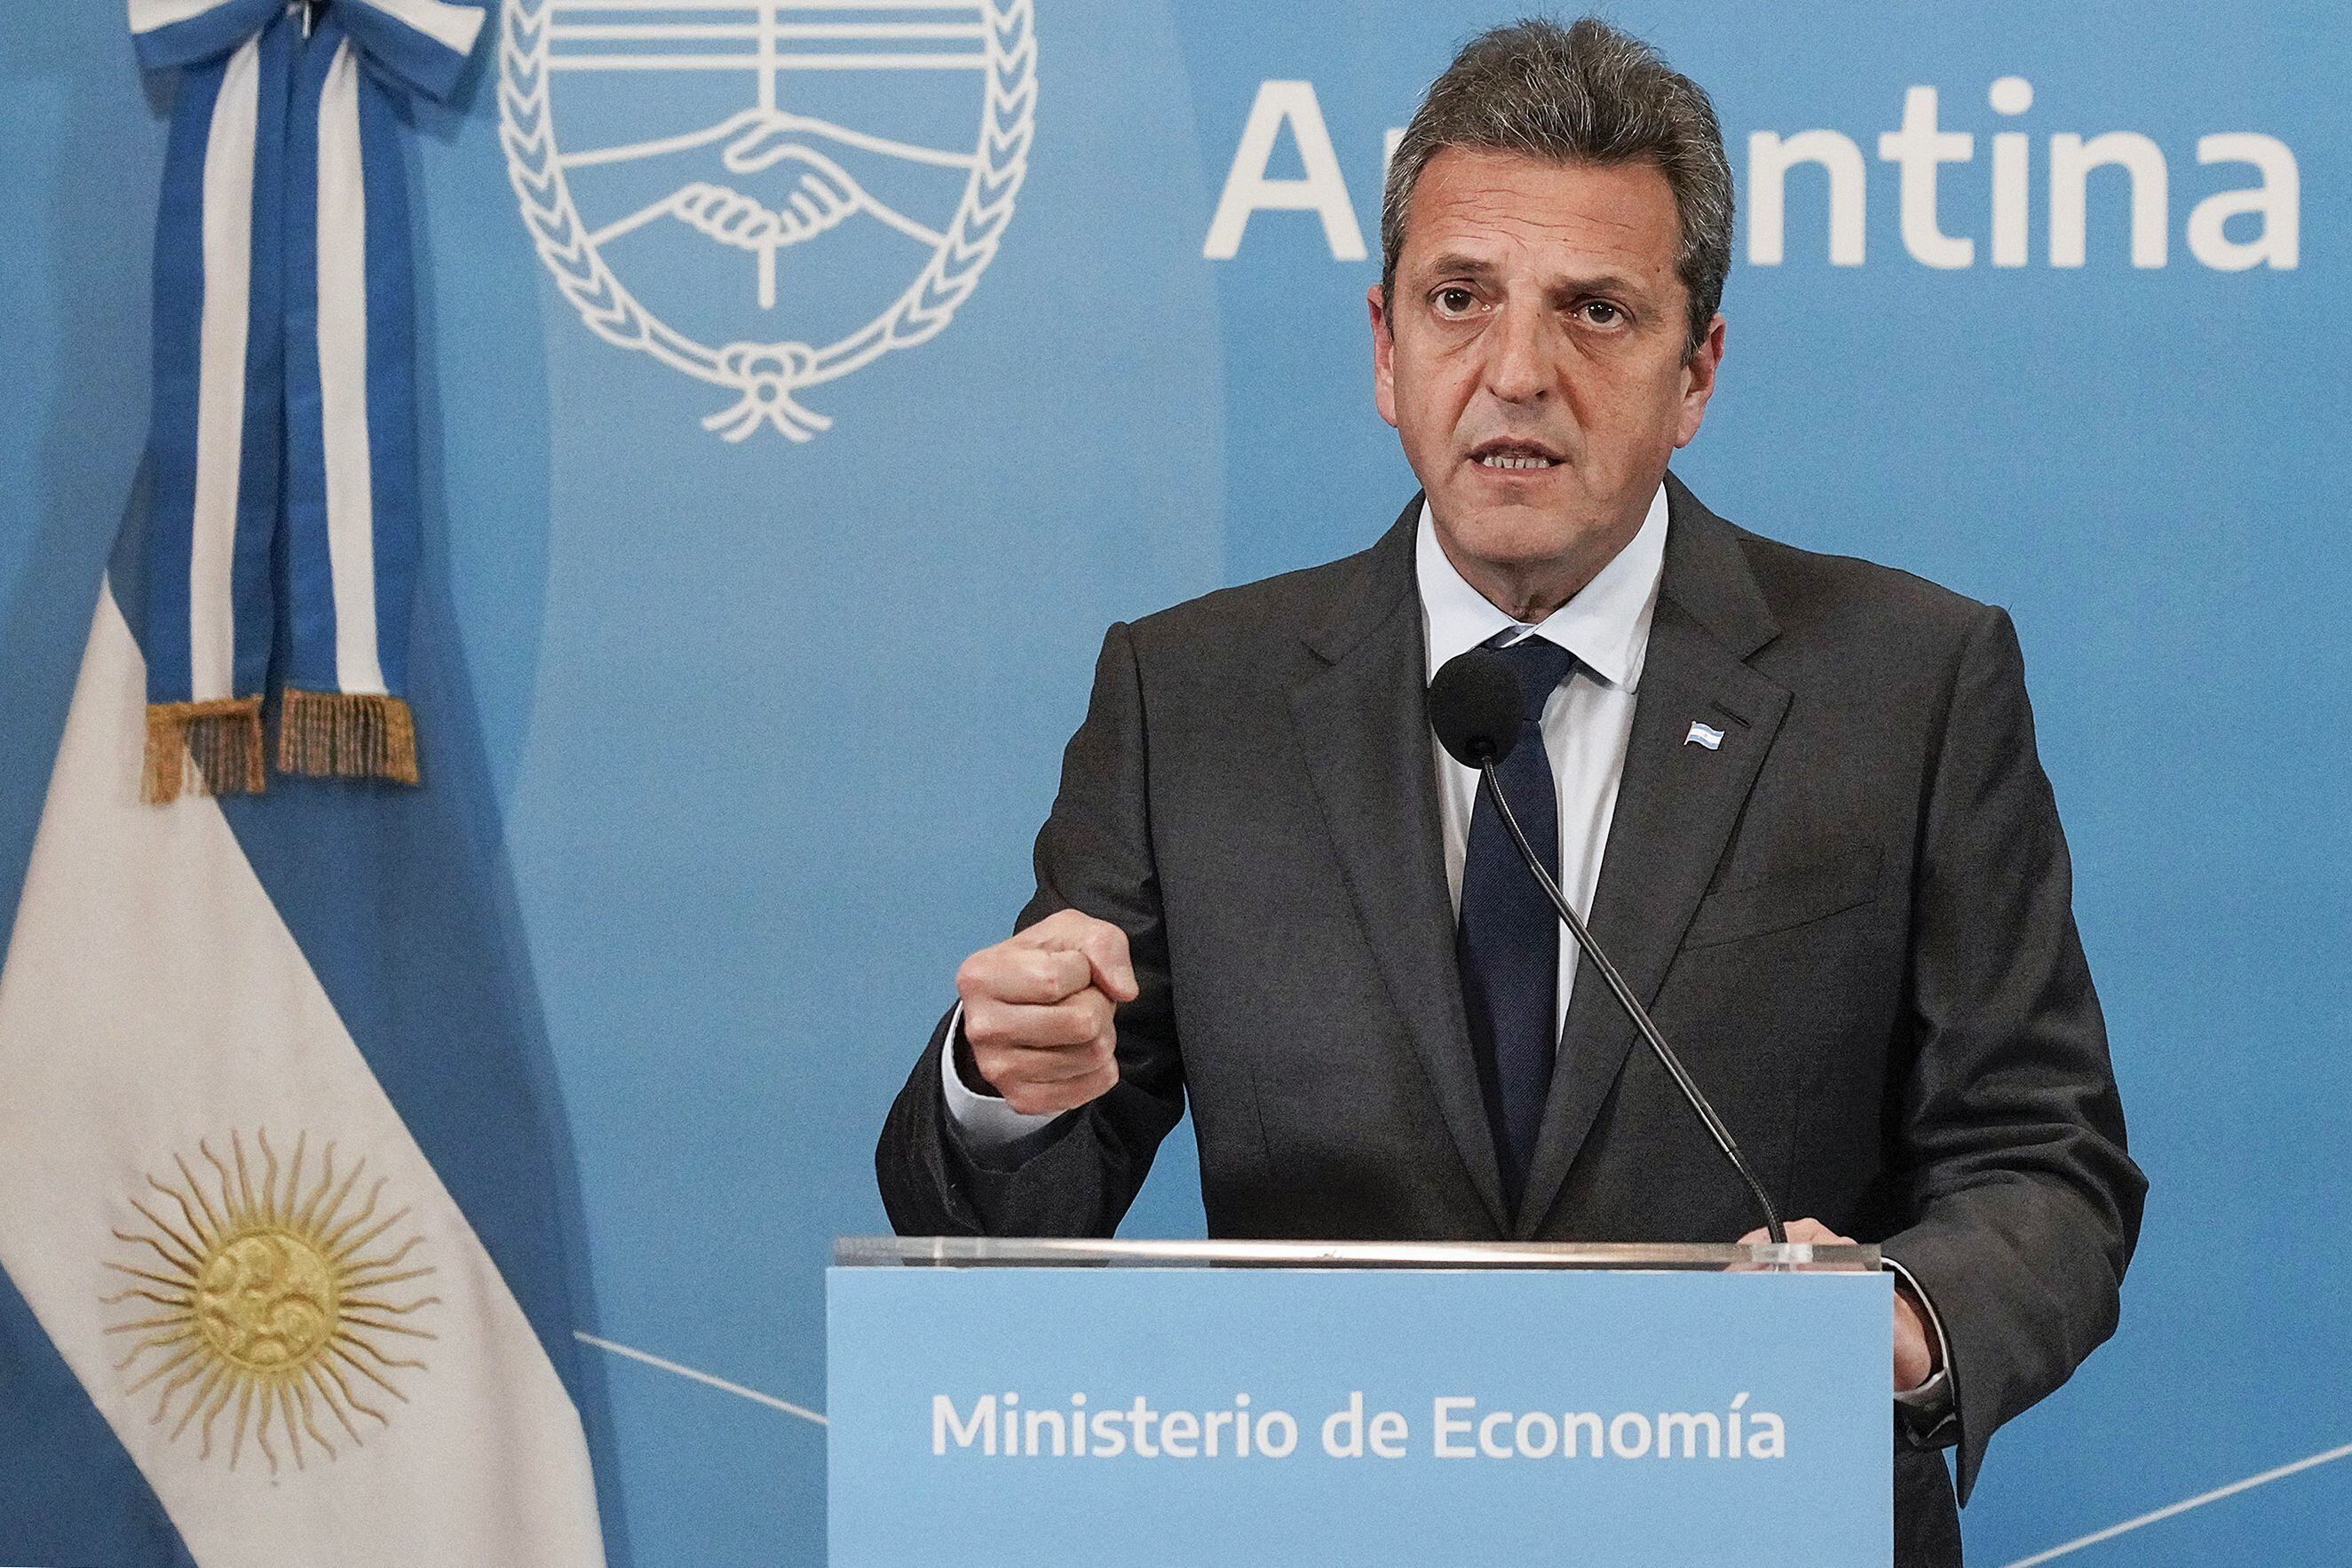 El ministro de Economía y candidato presidencial peronista, Sergio Massa anunció que Argentina sí cumplirá con el desembolso que debe hacer al FMI este lunes 31 de julio como parte de su acuerdo. Fotografía: